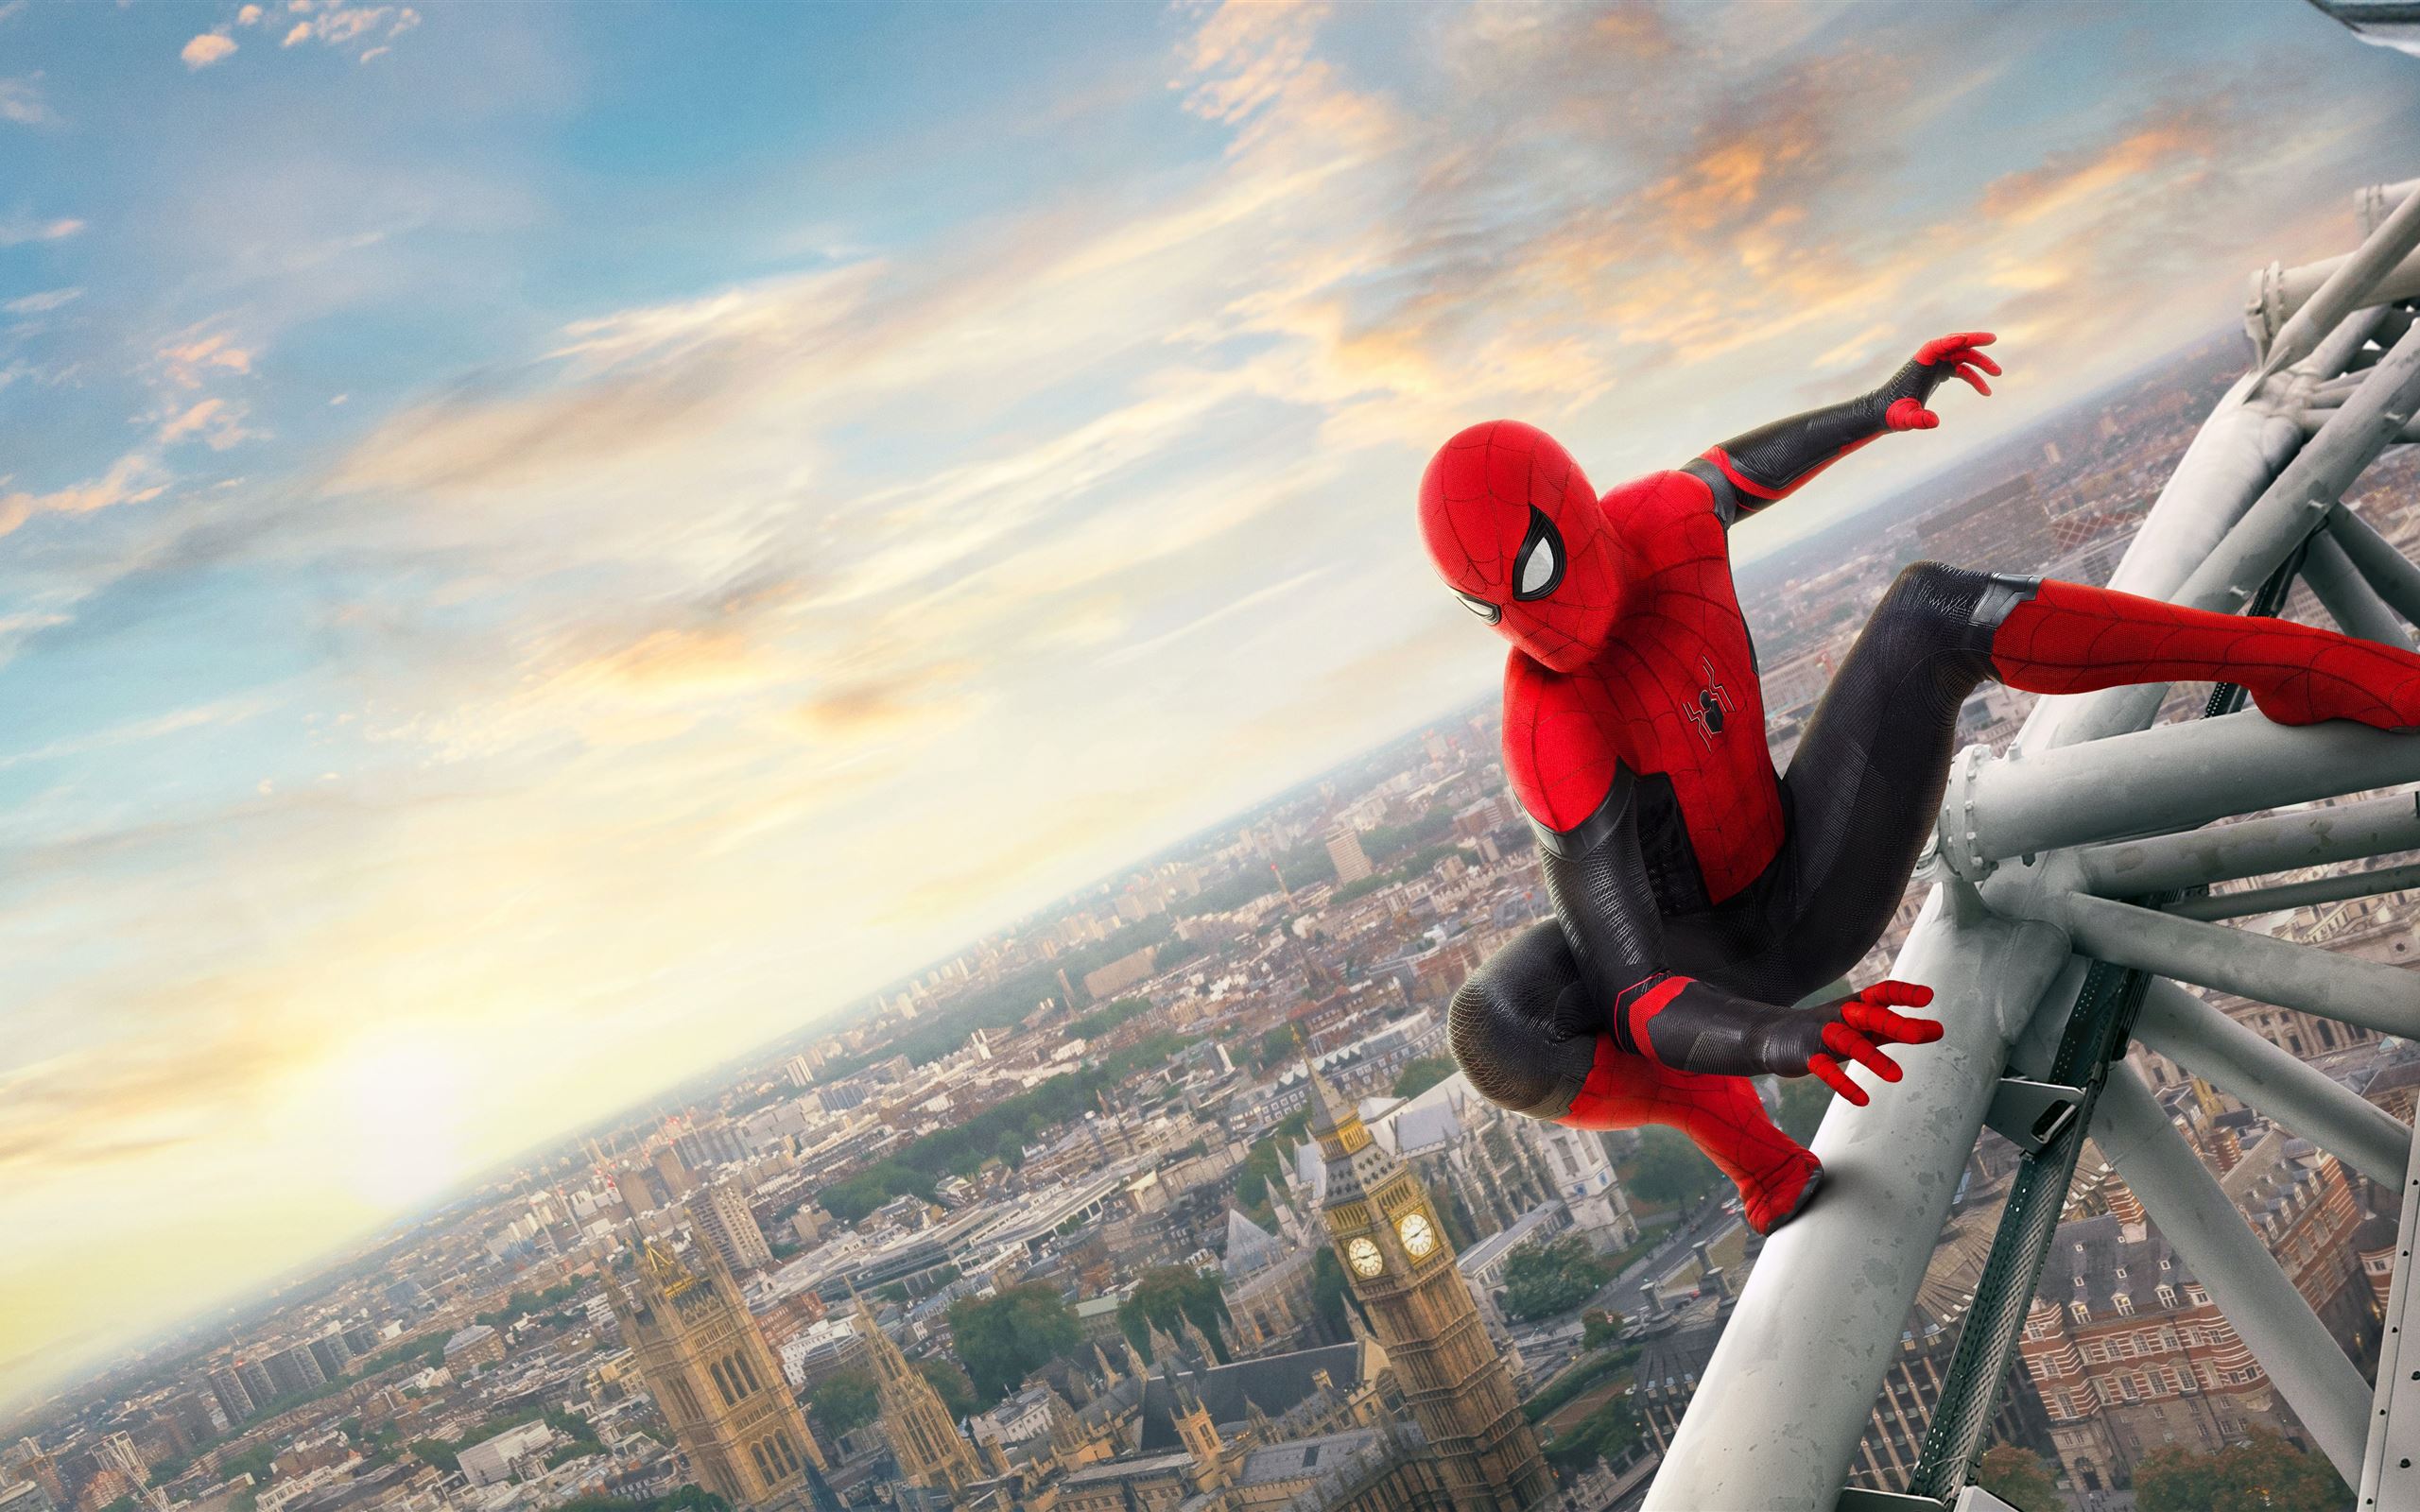 Spider-Man xa nhà - Hình nền: Khám phá vũ trụ siêu anh hùng với hình nền Spider-Man Far From Home đầy màu sắc và bắt mắt này! Bạn sẽ có cảm giác như thật sự đang ở thế giới của nhân vật này. Hãy tải ngay để truyền cảm hứng cho ngày mới của bạn!